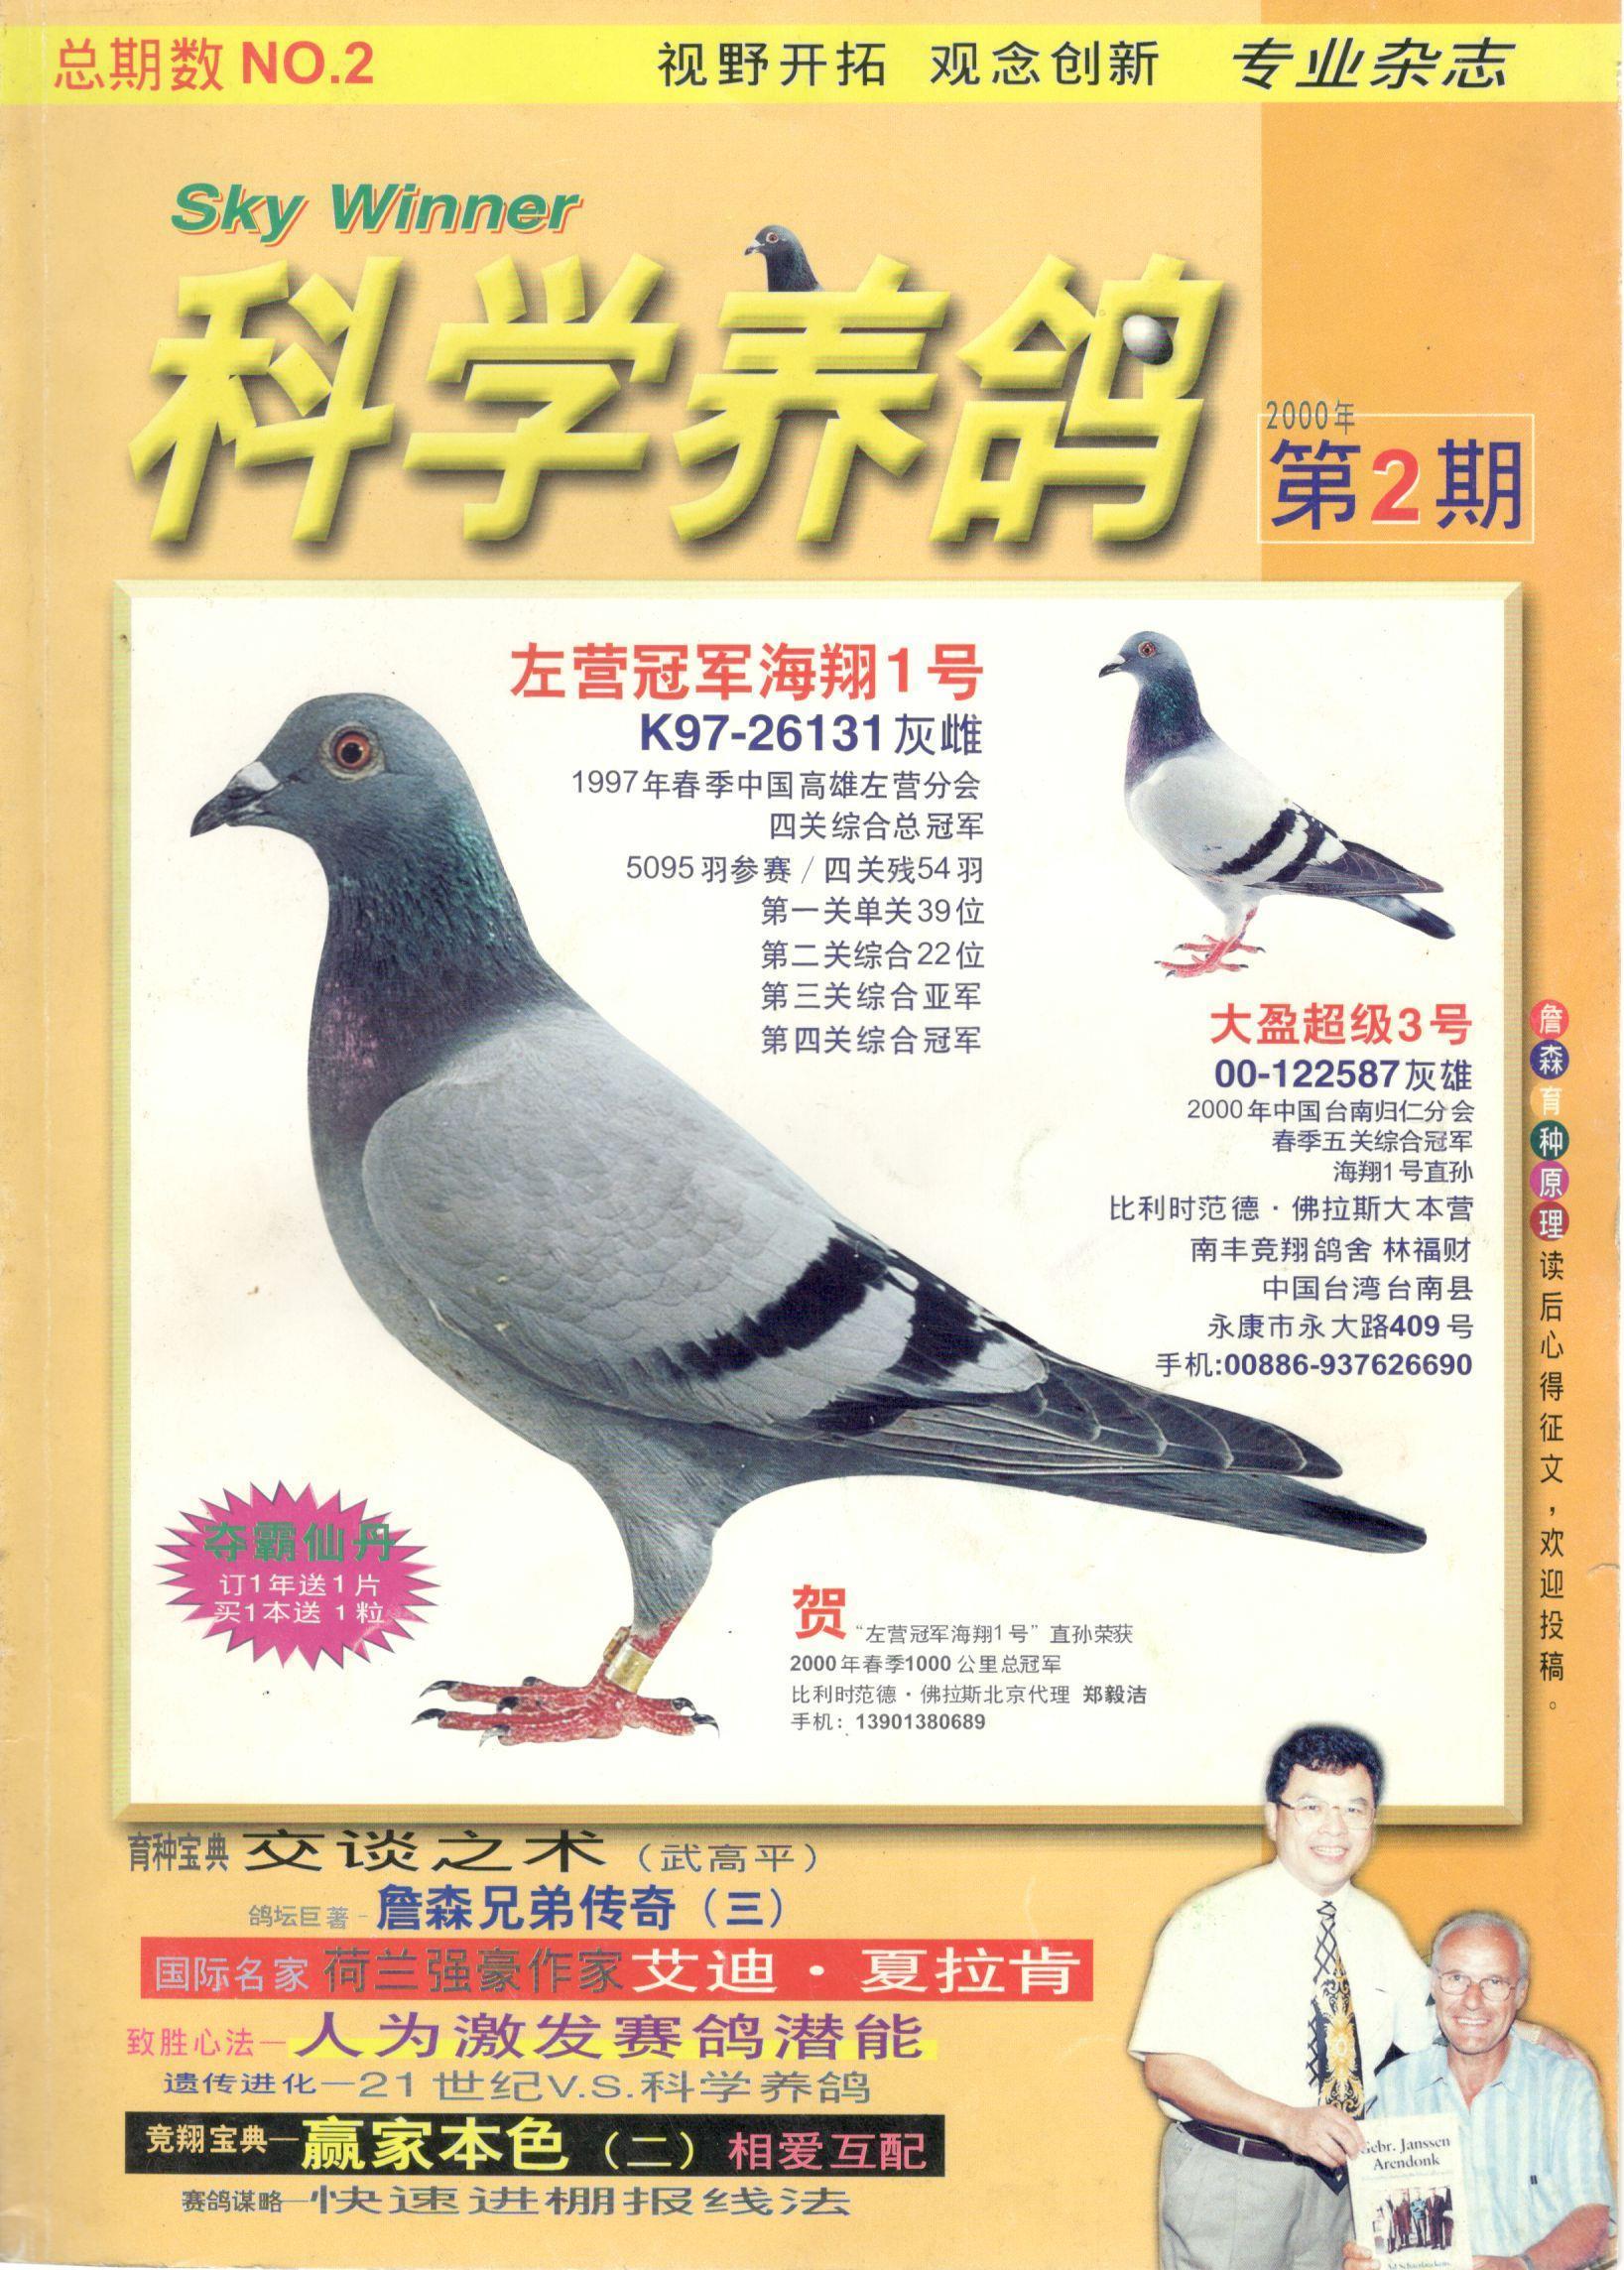 下岗工人以鸽养鸽(图)-信鸽园地-中国信鸽信息网